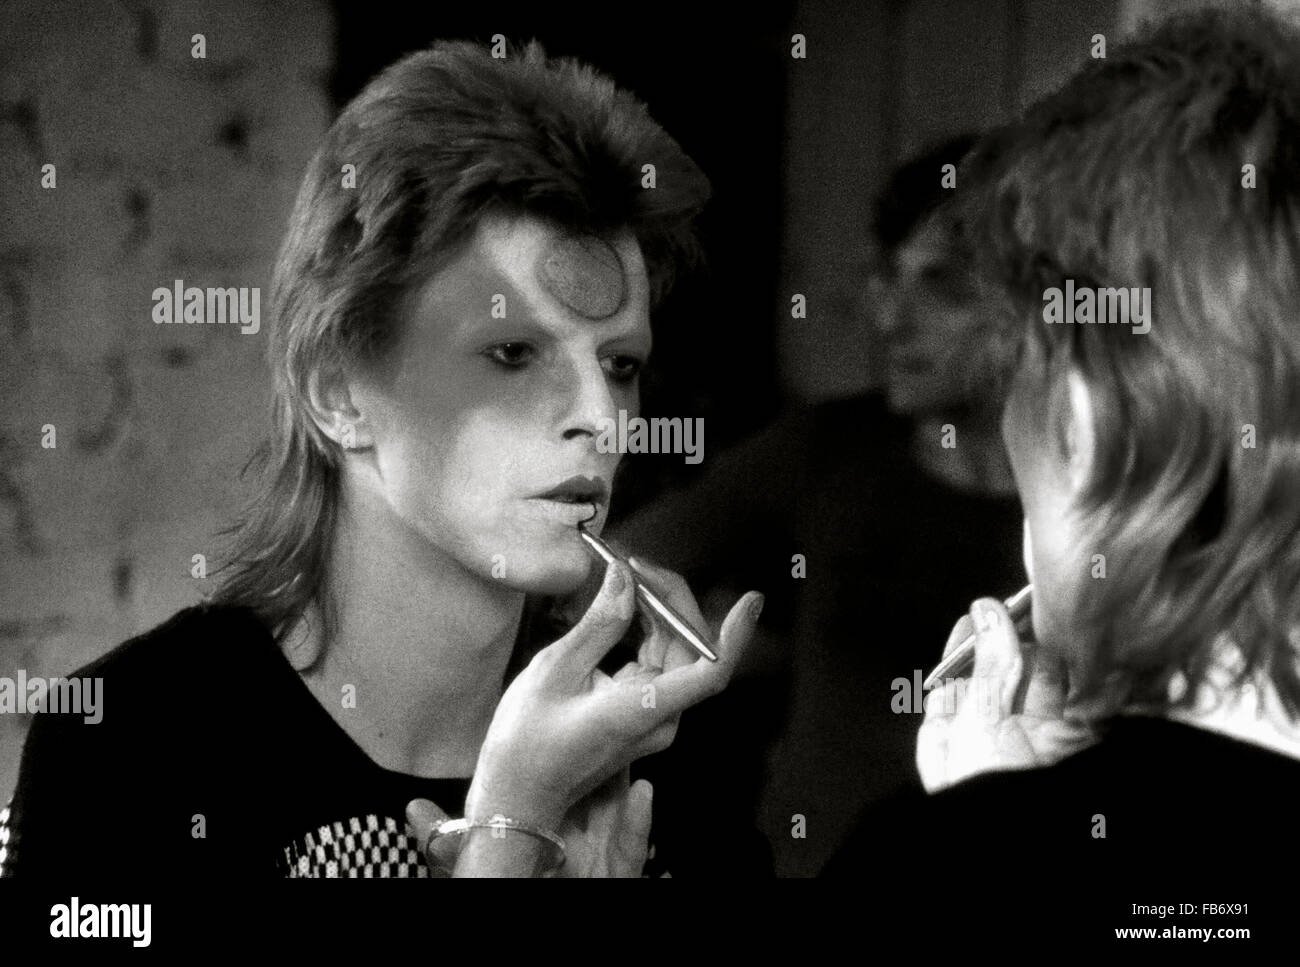 Lewisham, Londres, Inglaterra, Reino Unido. 22 de mayo de 1973. Aplicación de David Bowie Ziggy Stardust maquillaje en vestidor backstage. Su guitarrista Mick Ronson está detrás de él y puede verse reflejado en el espejo. Roger Bamber/Alamy Live News Foto de stock